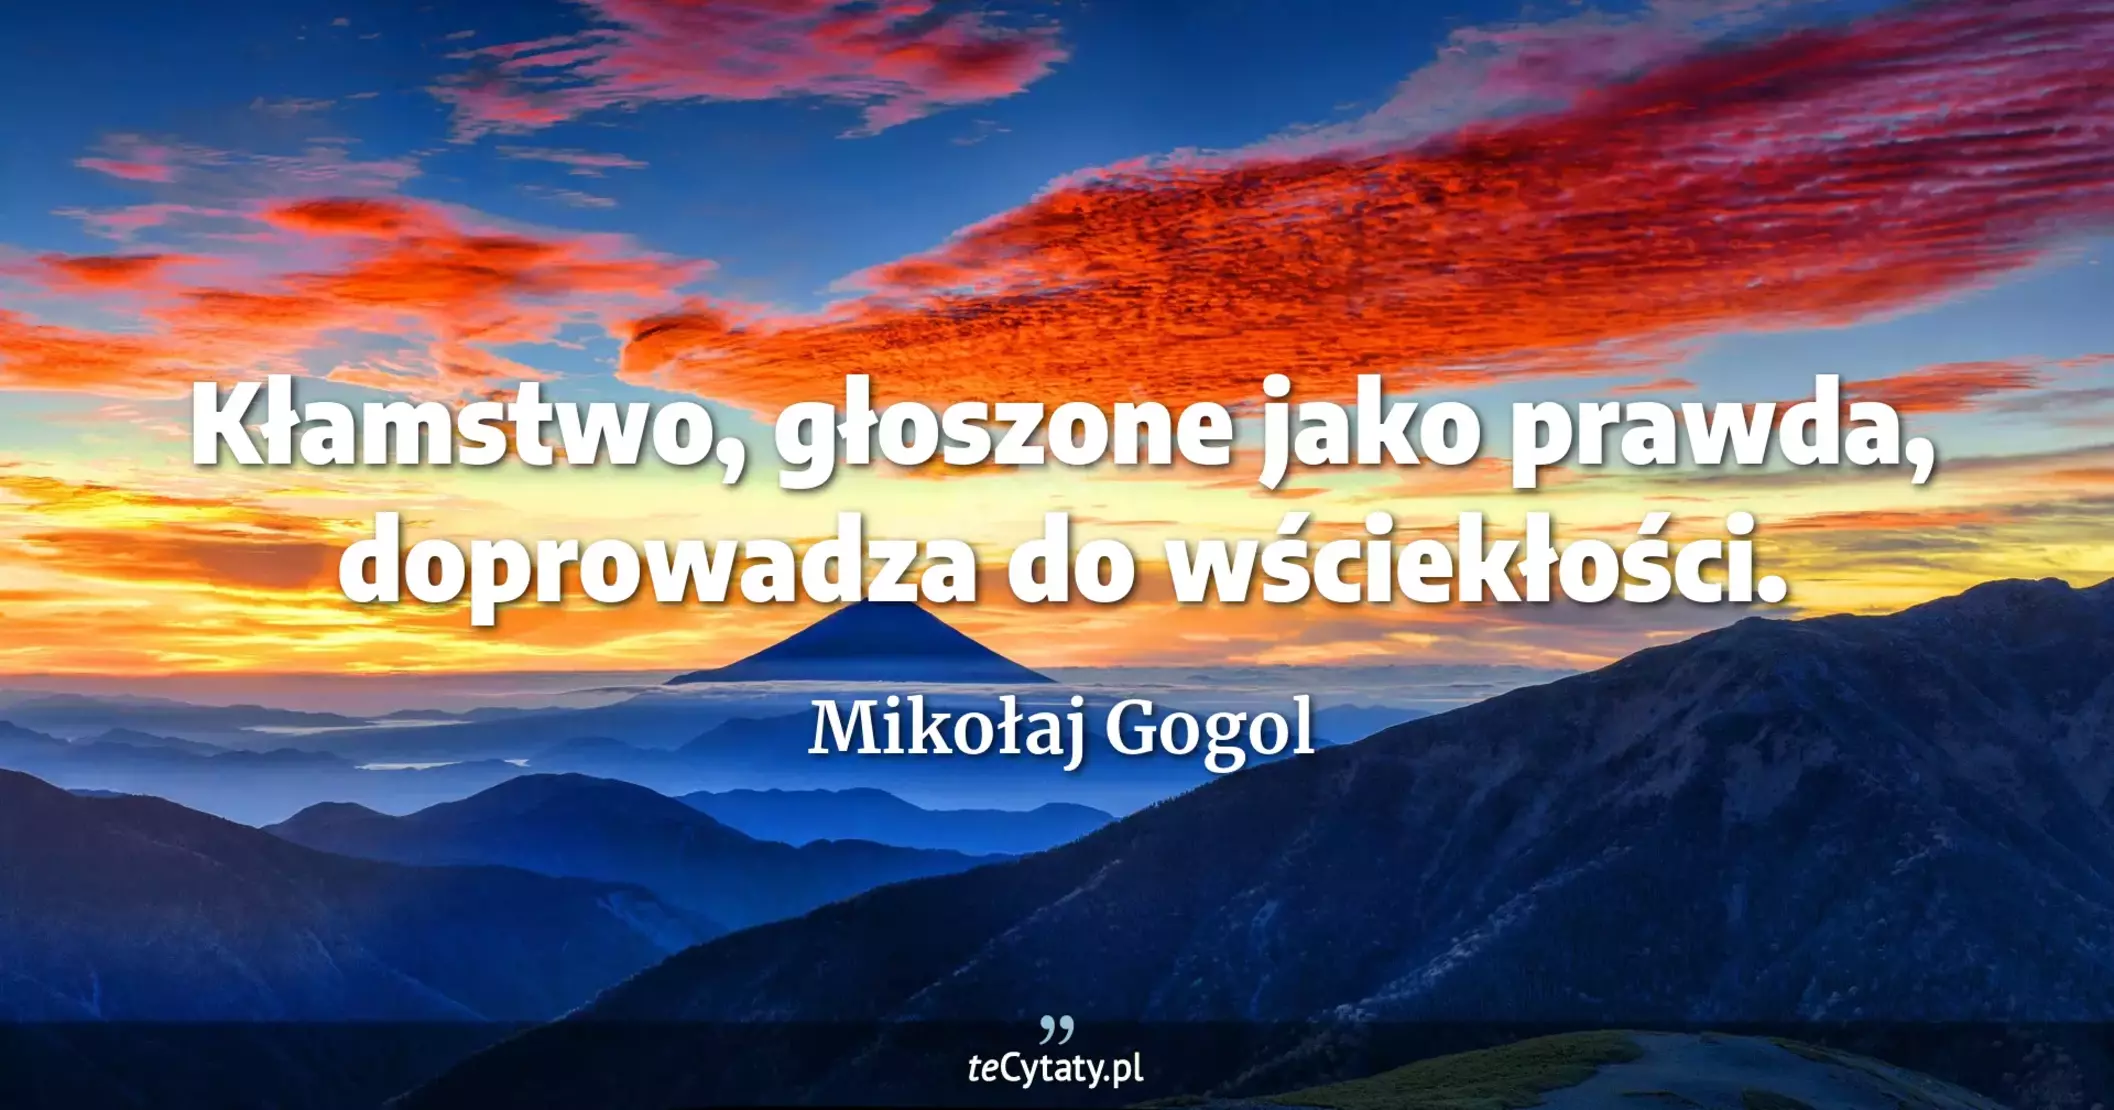 Kłamstwo, głoszone jako prawda, doprowadza do wściekłości. - Mikołaj Gogol